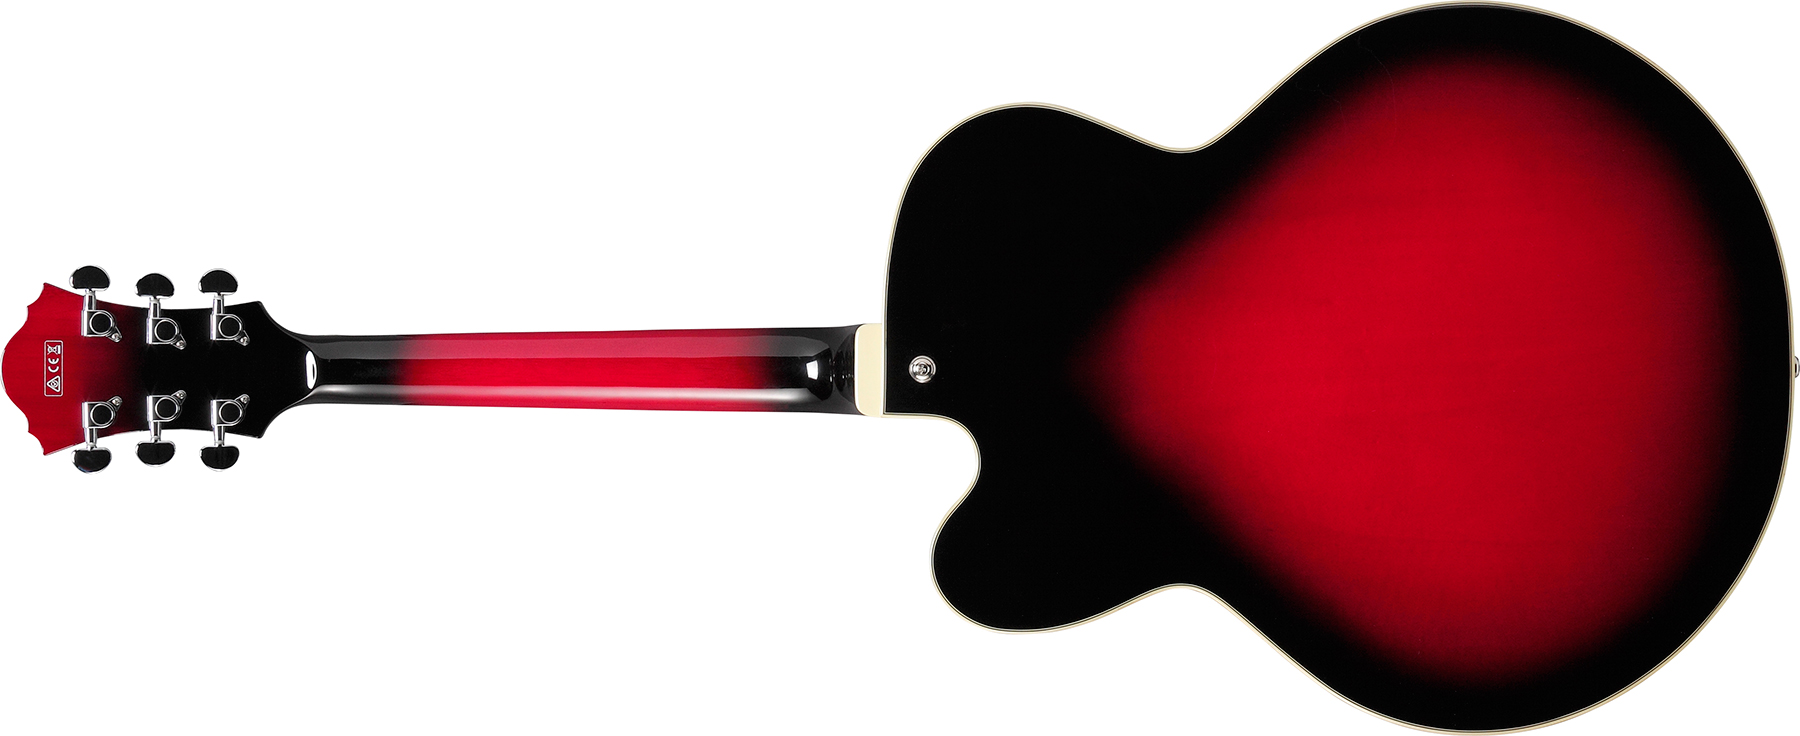 Ibanez Af75 Trs Artcore 2h Ht Wal - Transparent Red Sunburst - Hollow bodytock elektrische gitaar - Variation 1